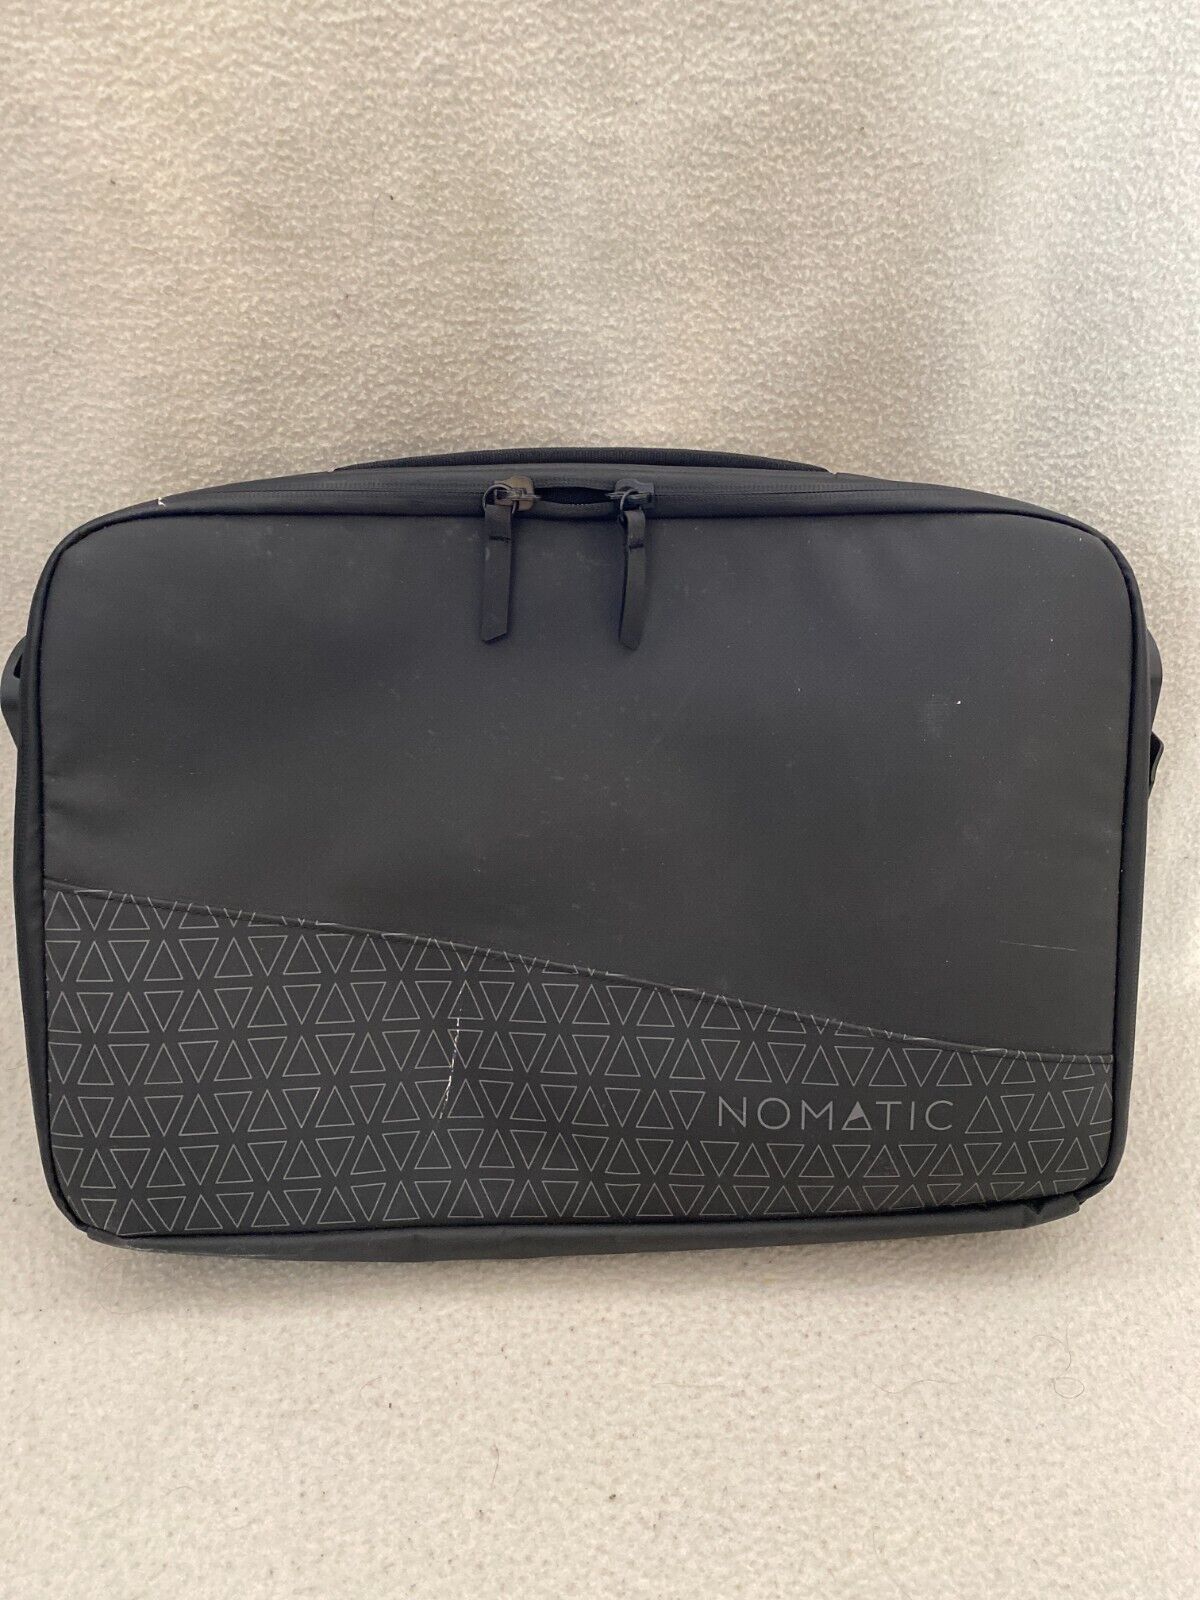 Nomatic Messenger Laptop Bag in Black